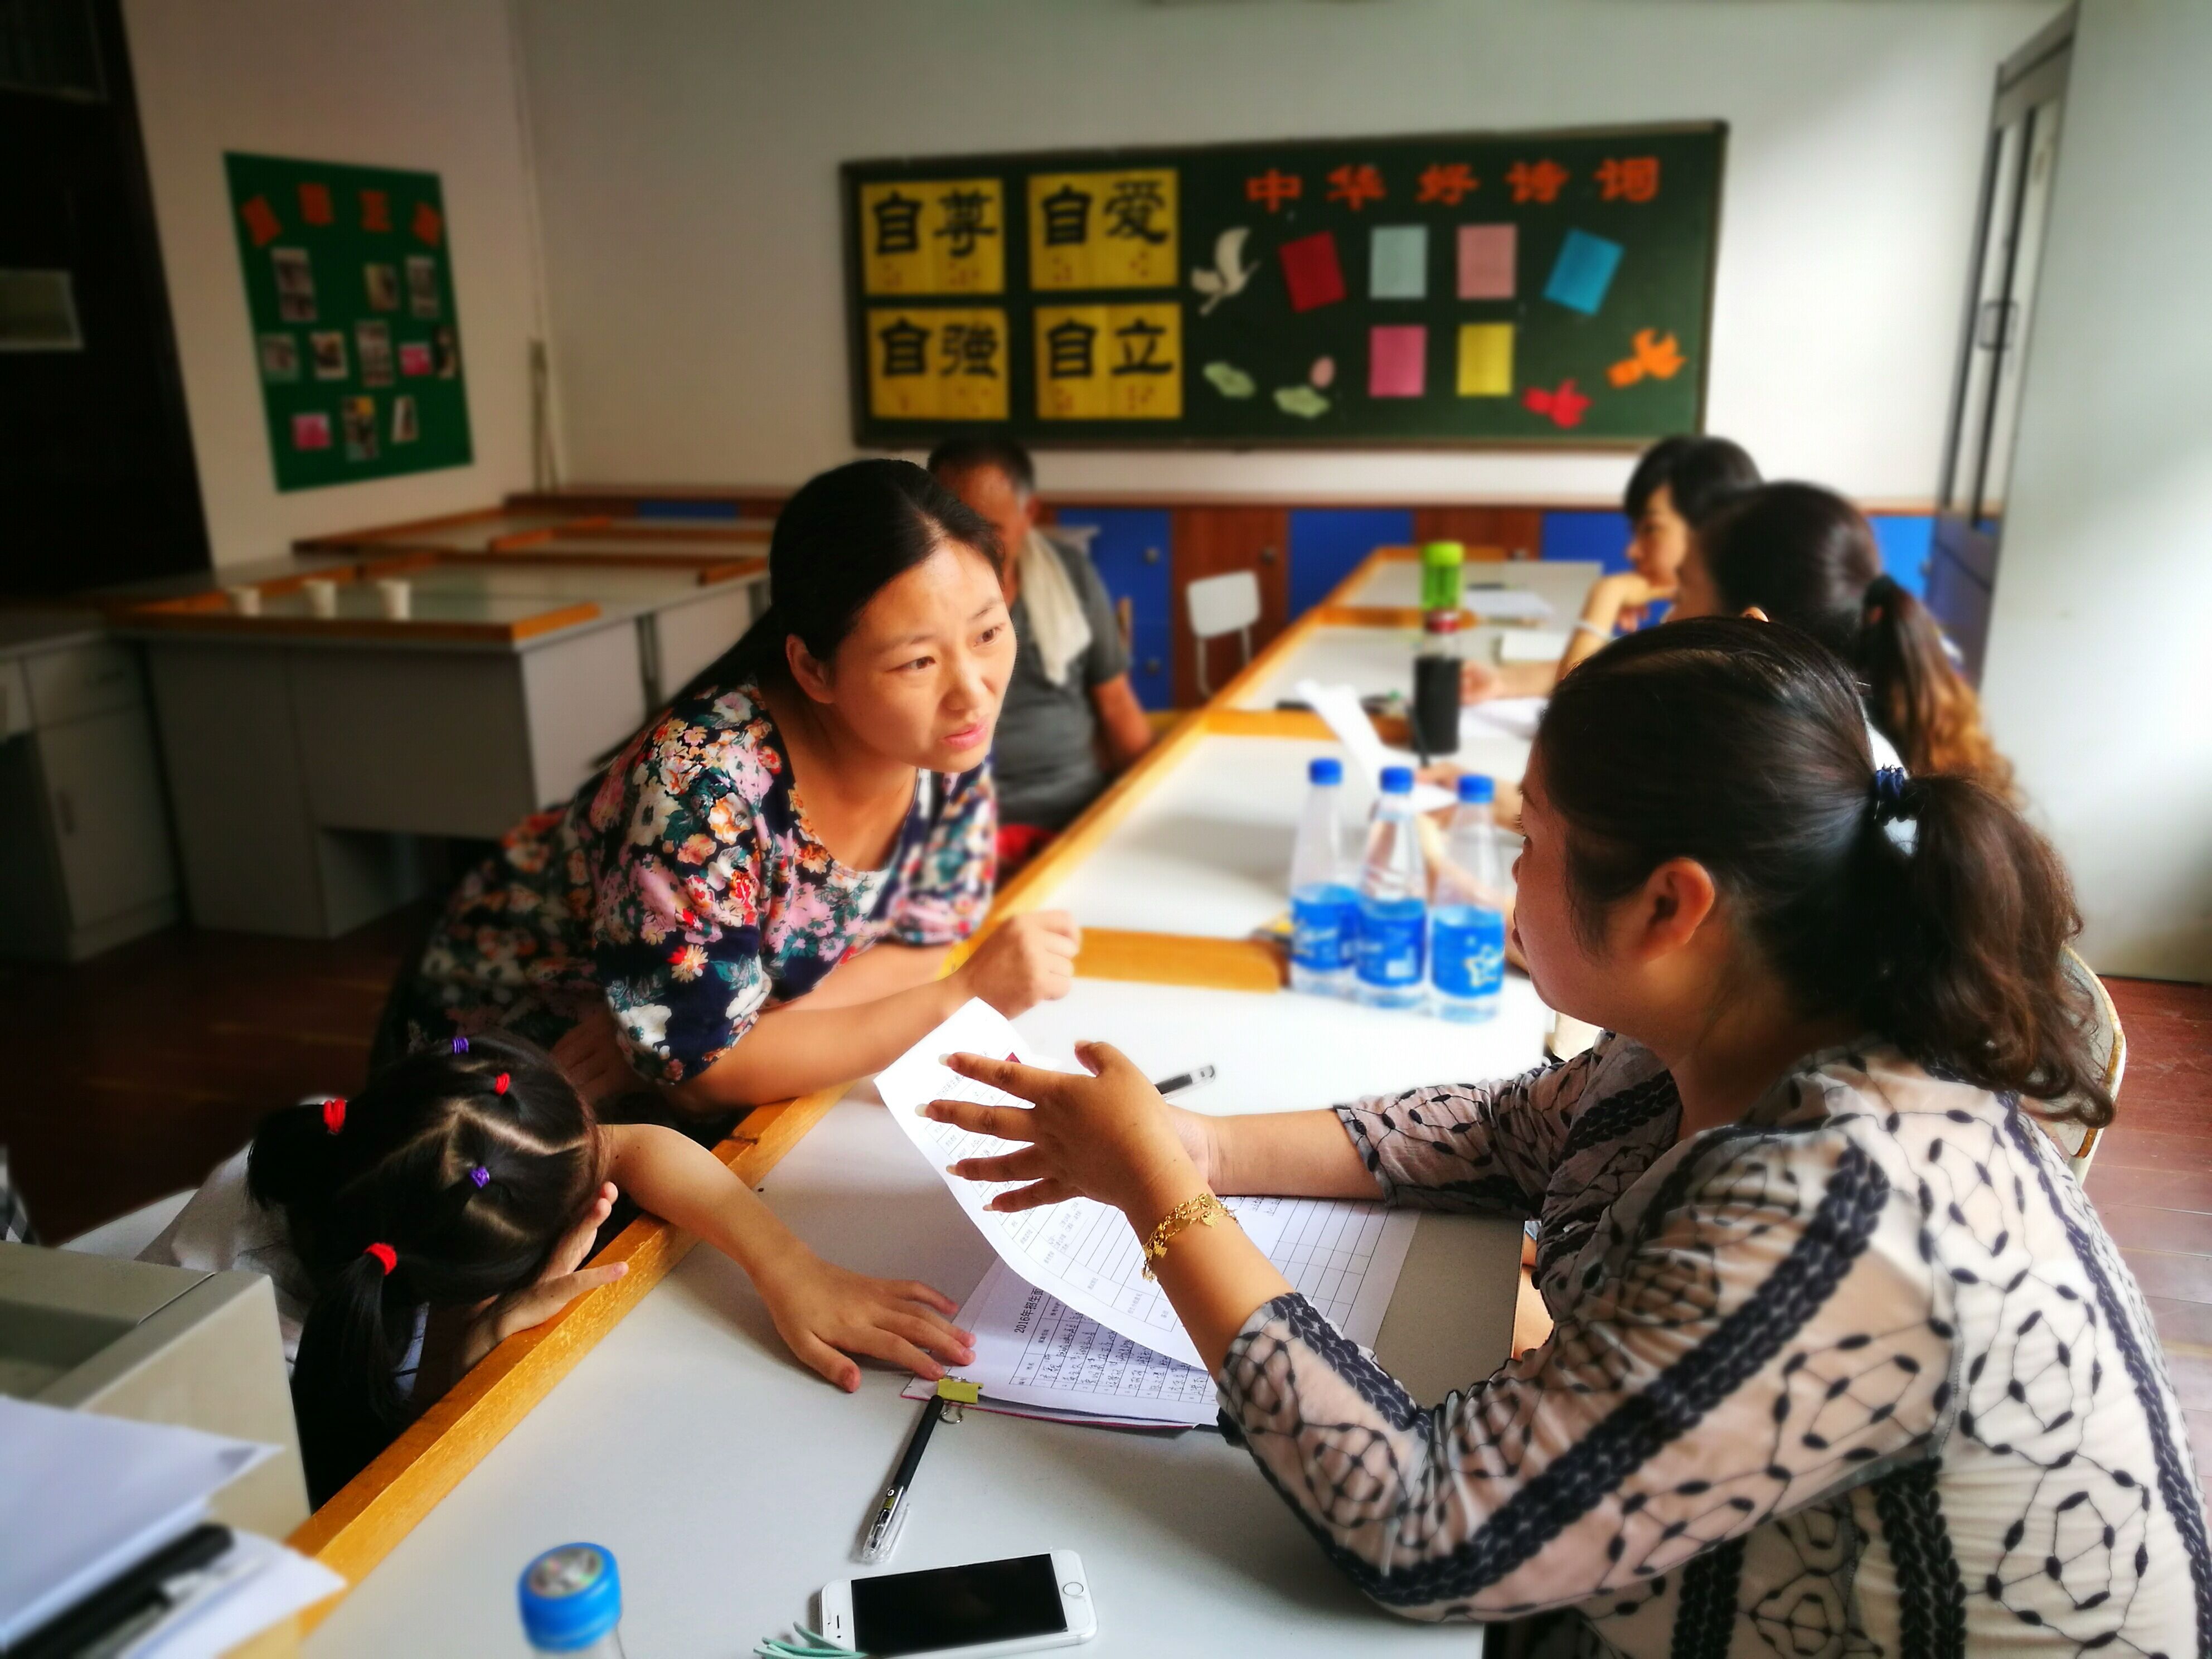 郑州市盲聋哑学校开展招生工作,助力新学期!